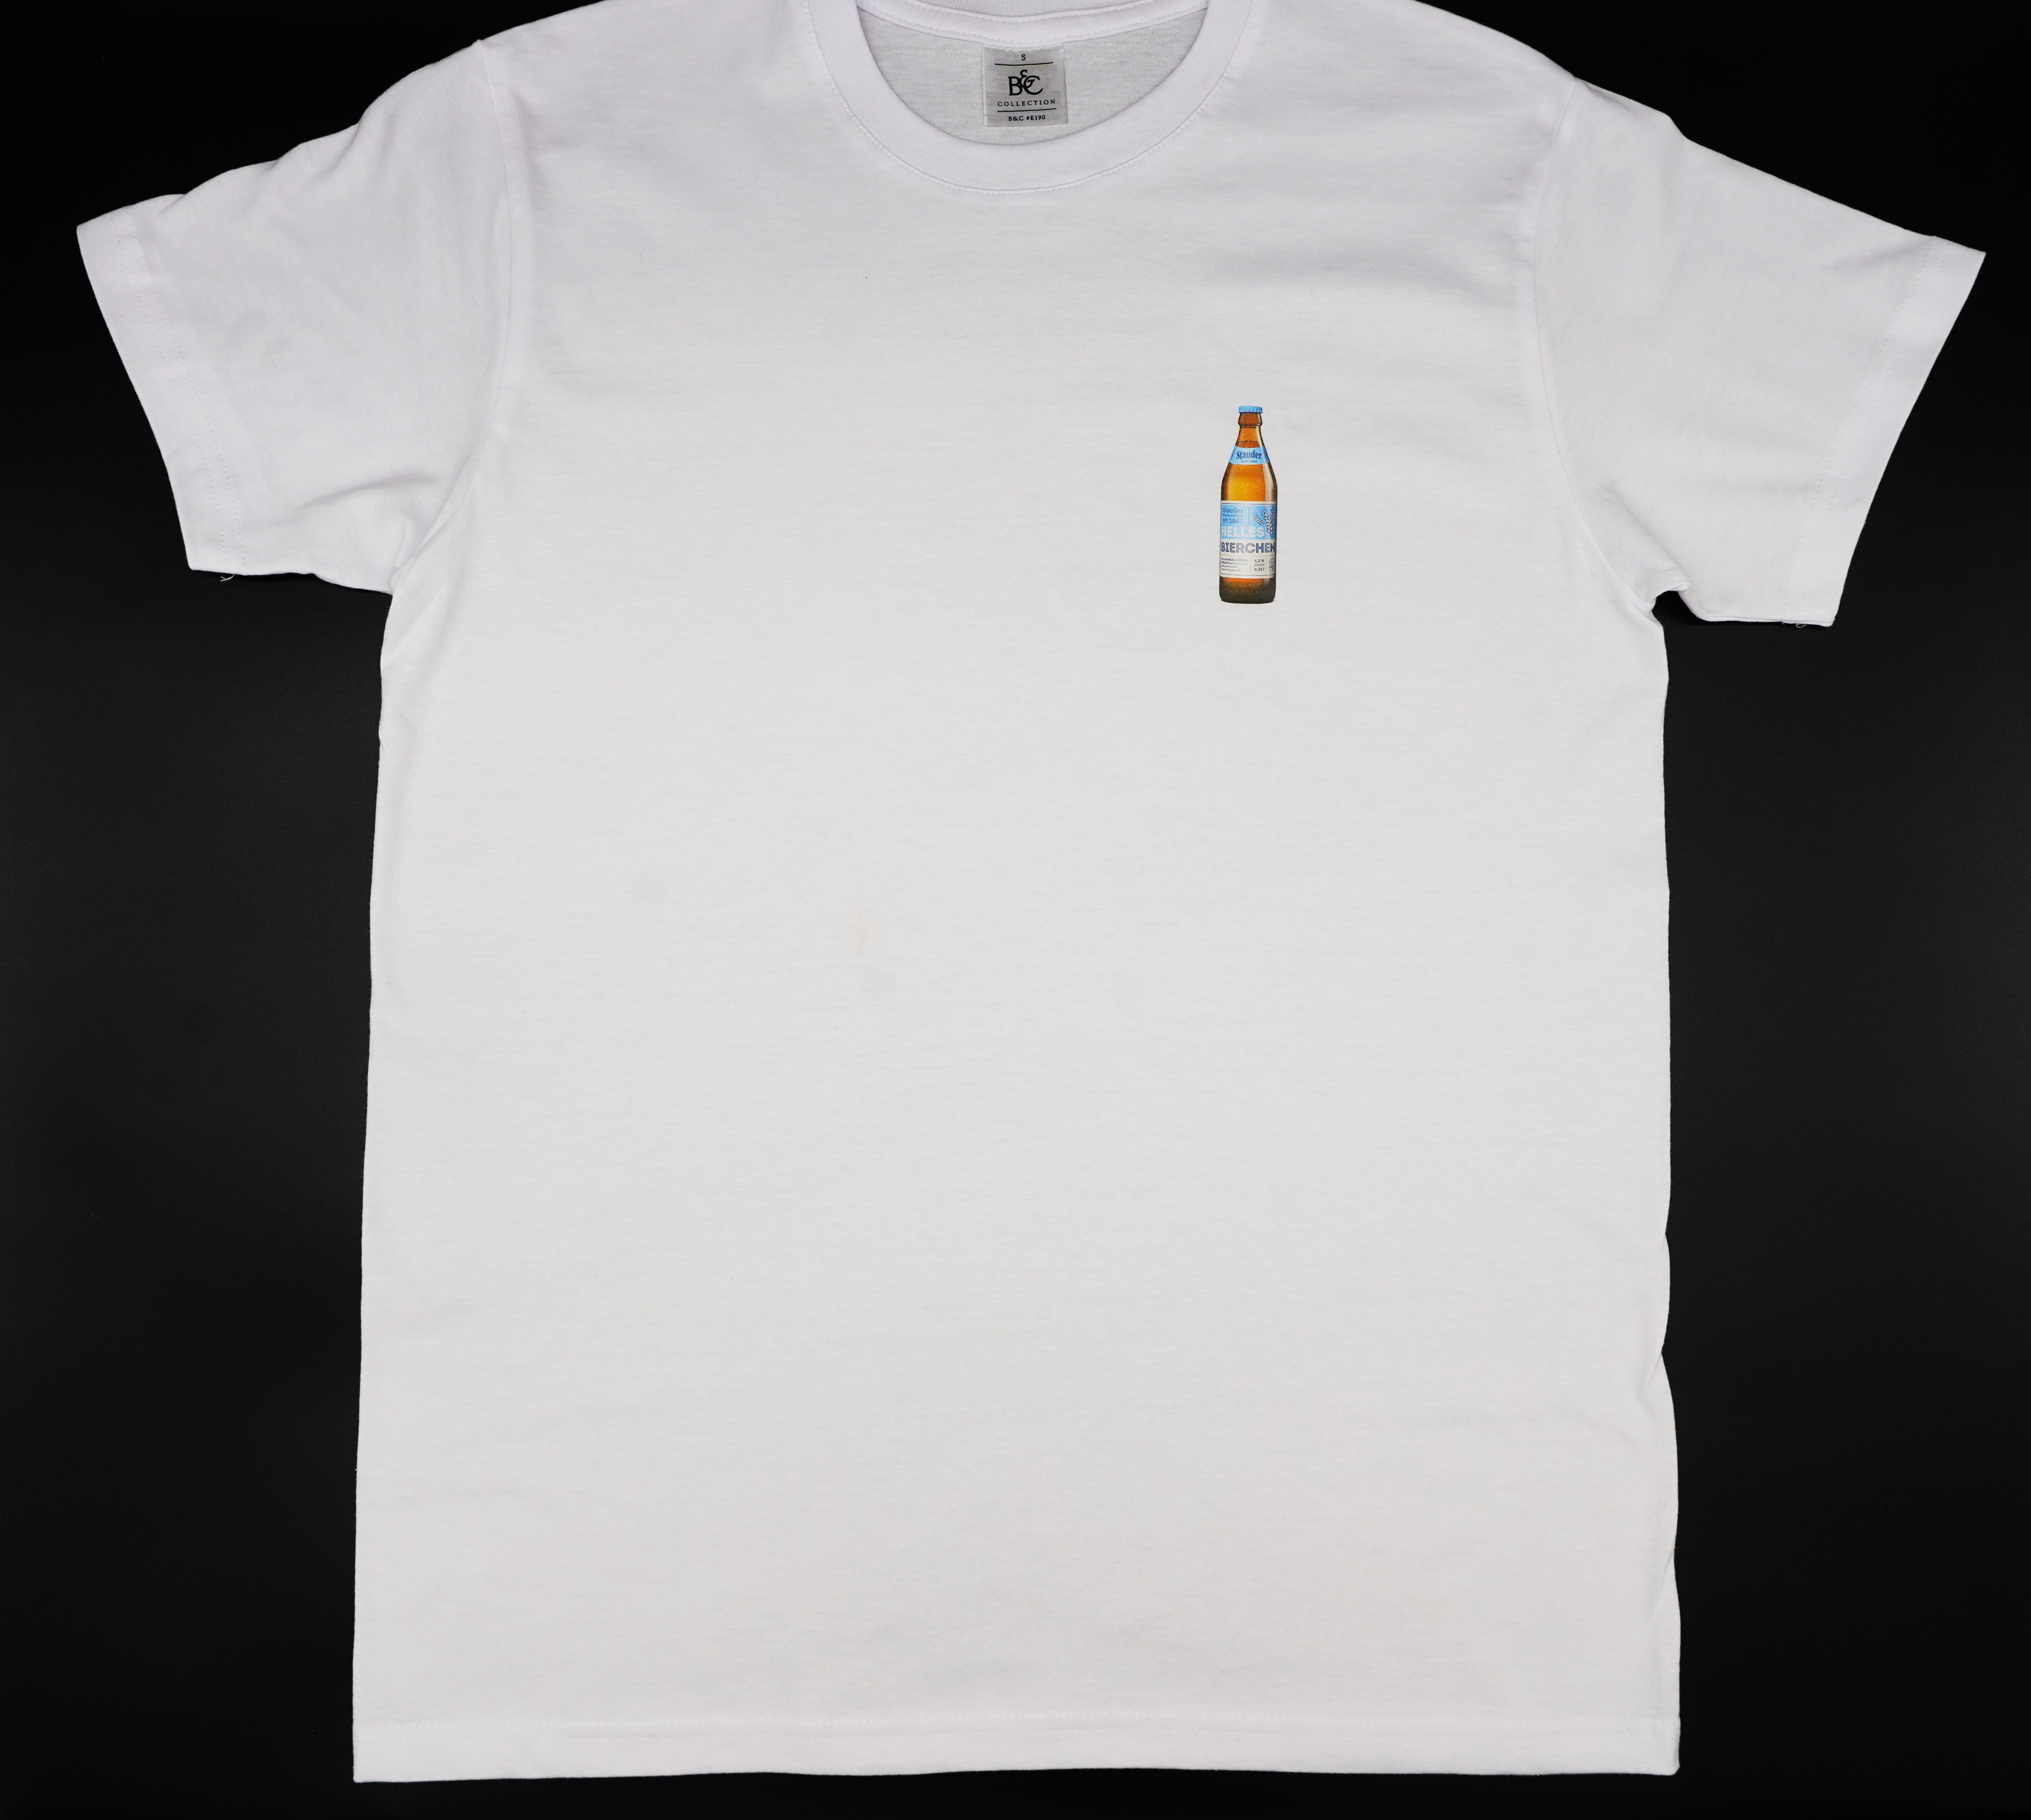    Stauder T-Shirt "Helles Bierchen"